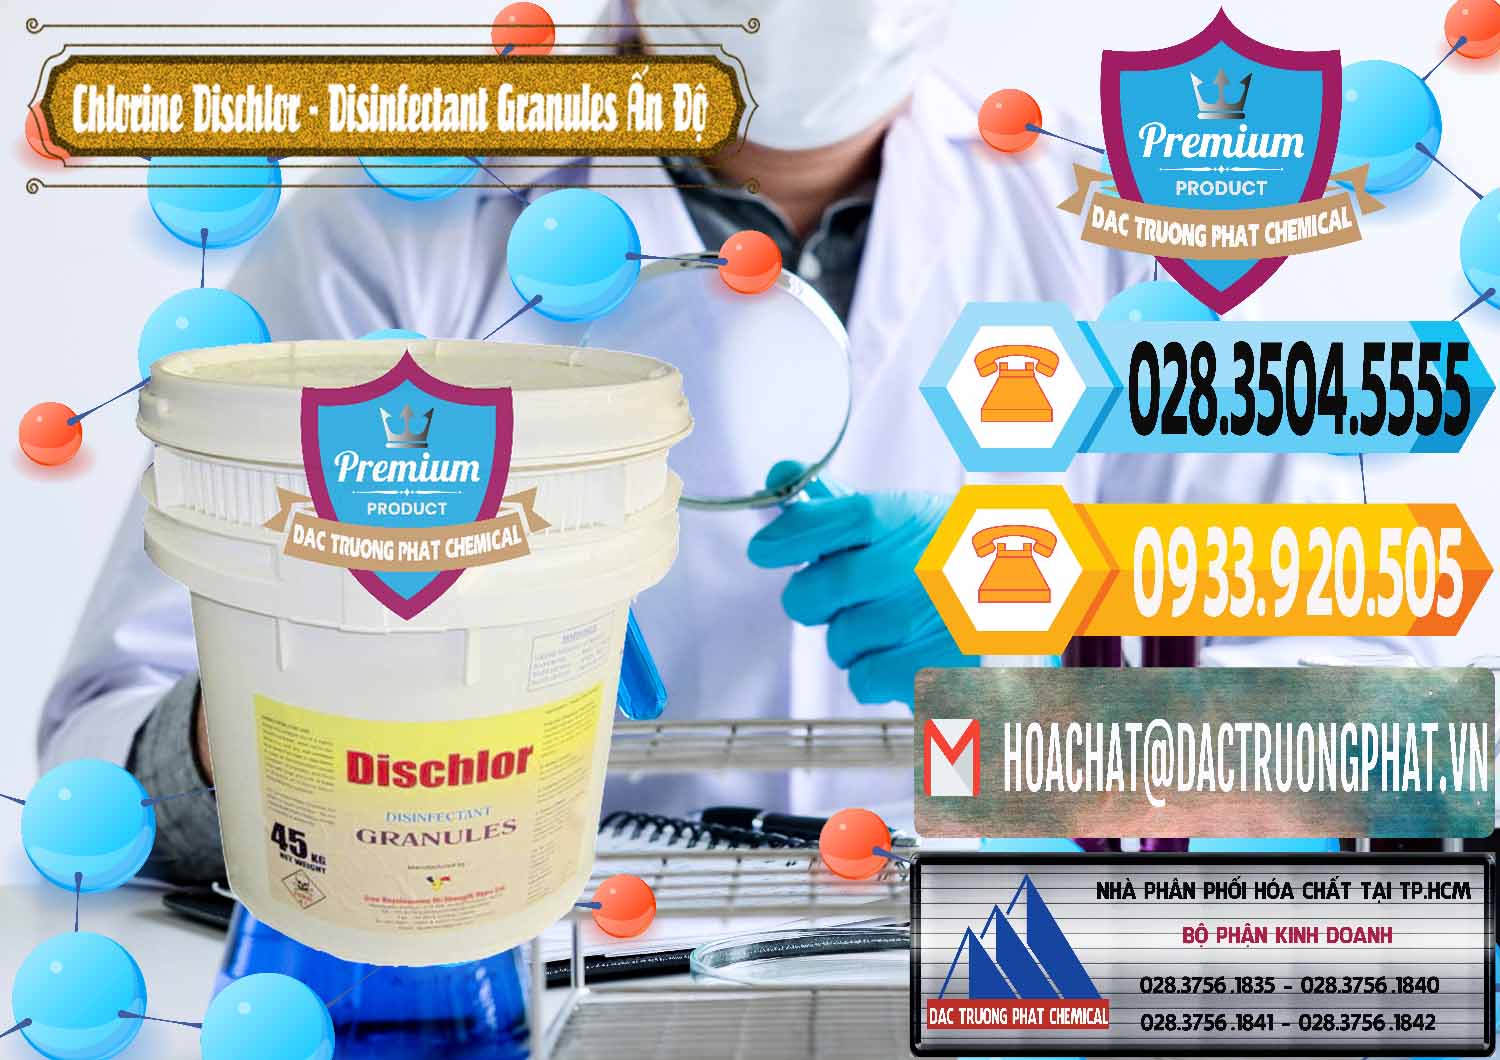 Bán _ cung cấp Chlorine – Clorin 70% Dischlor - Disinfectant Granules Ấn Độ India - 0248 - Nơi phân phối & kinh doanh hóa chất tại TP.HCM - hoachattayrua.net